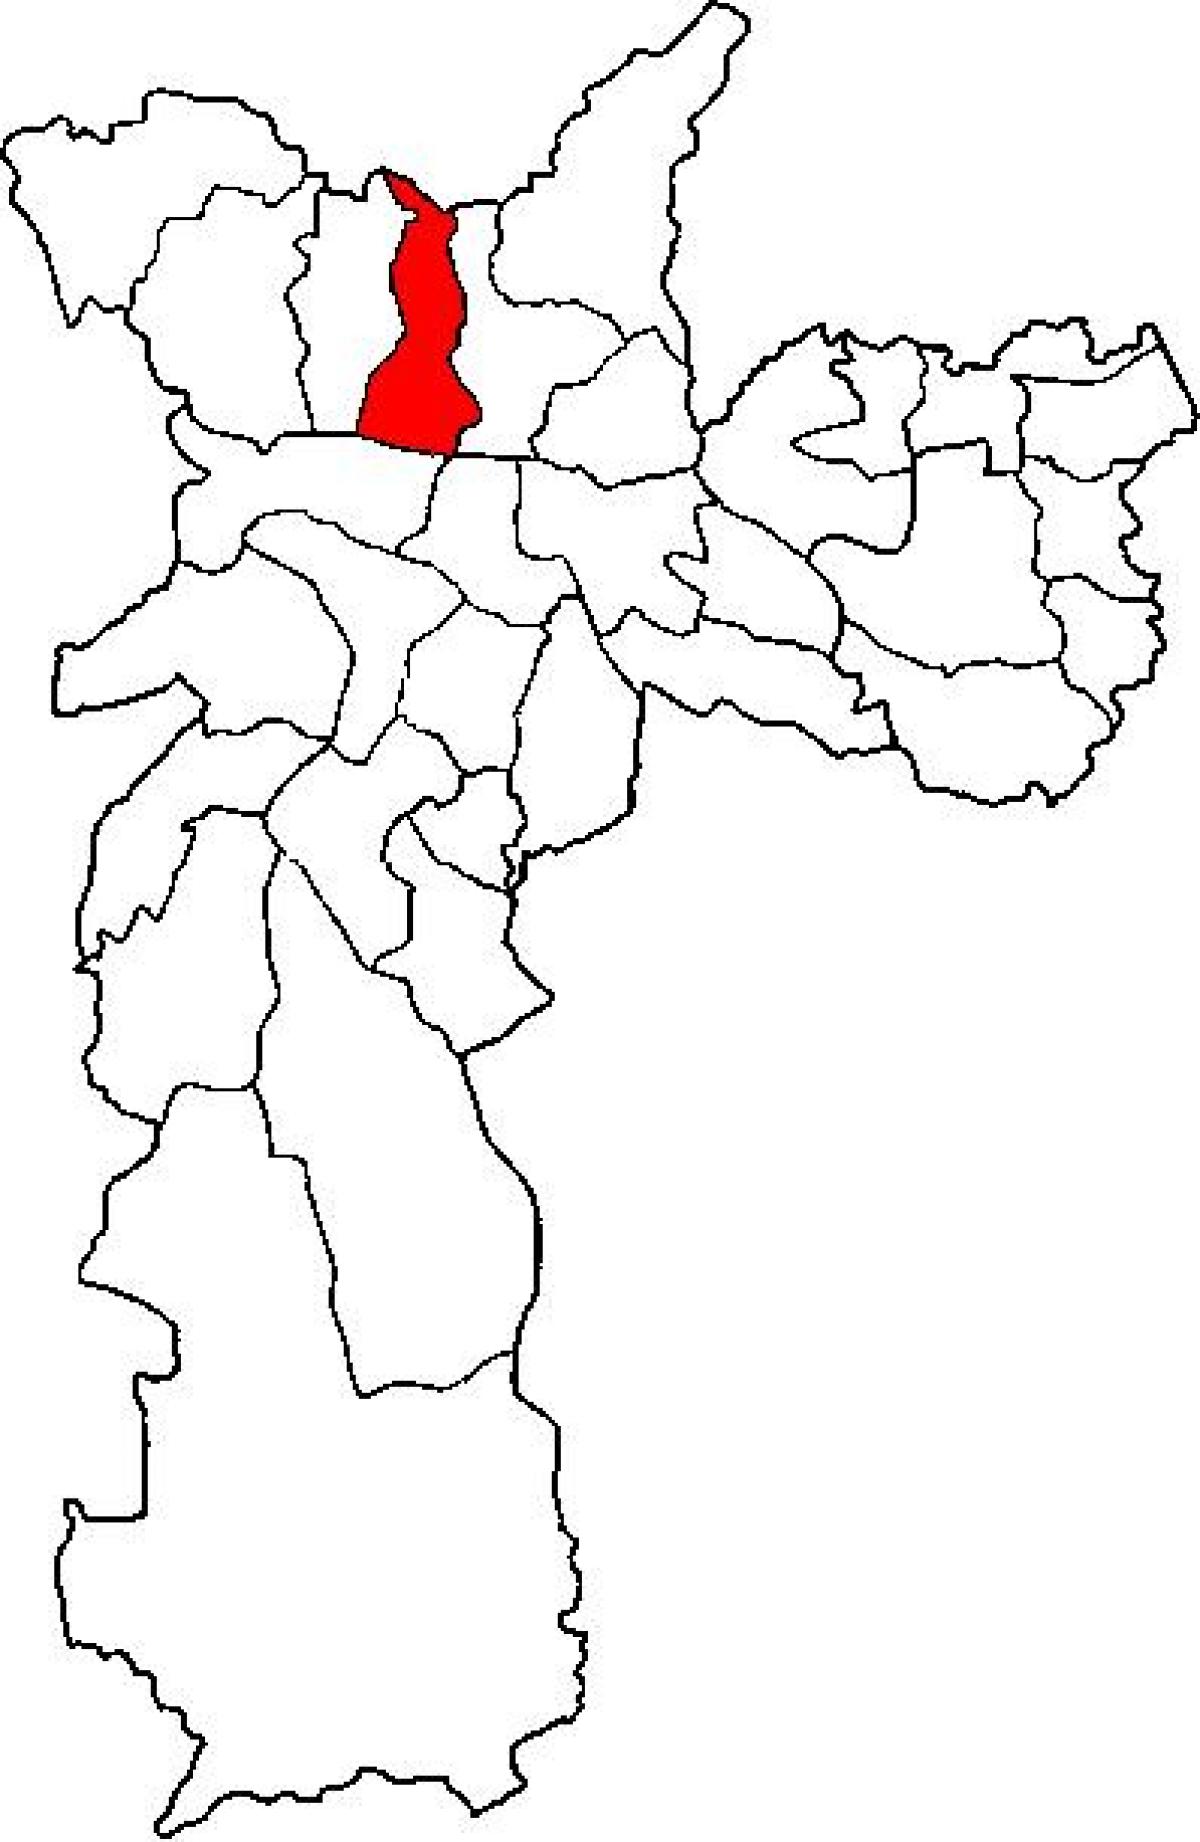 નકશો કાસા વર્ડે પેટા-પ્રીફેકચર સાઓ પાઉલો